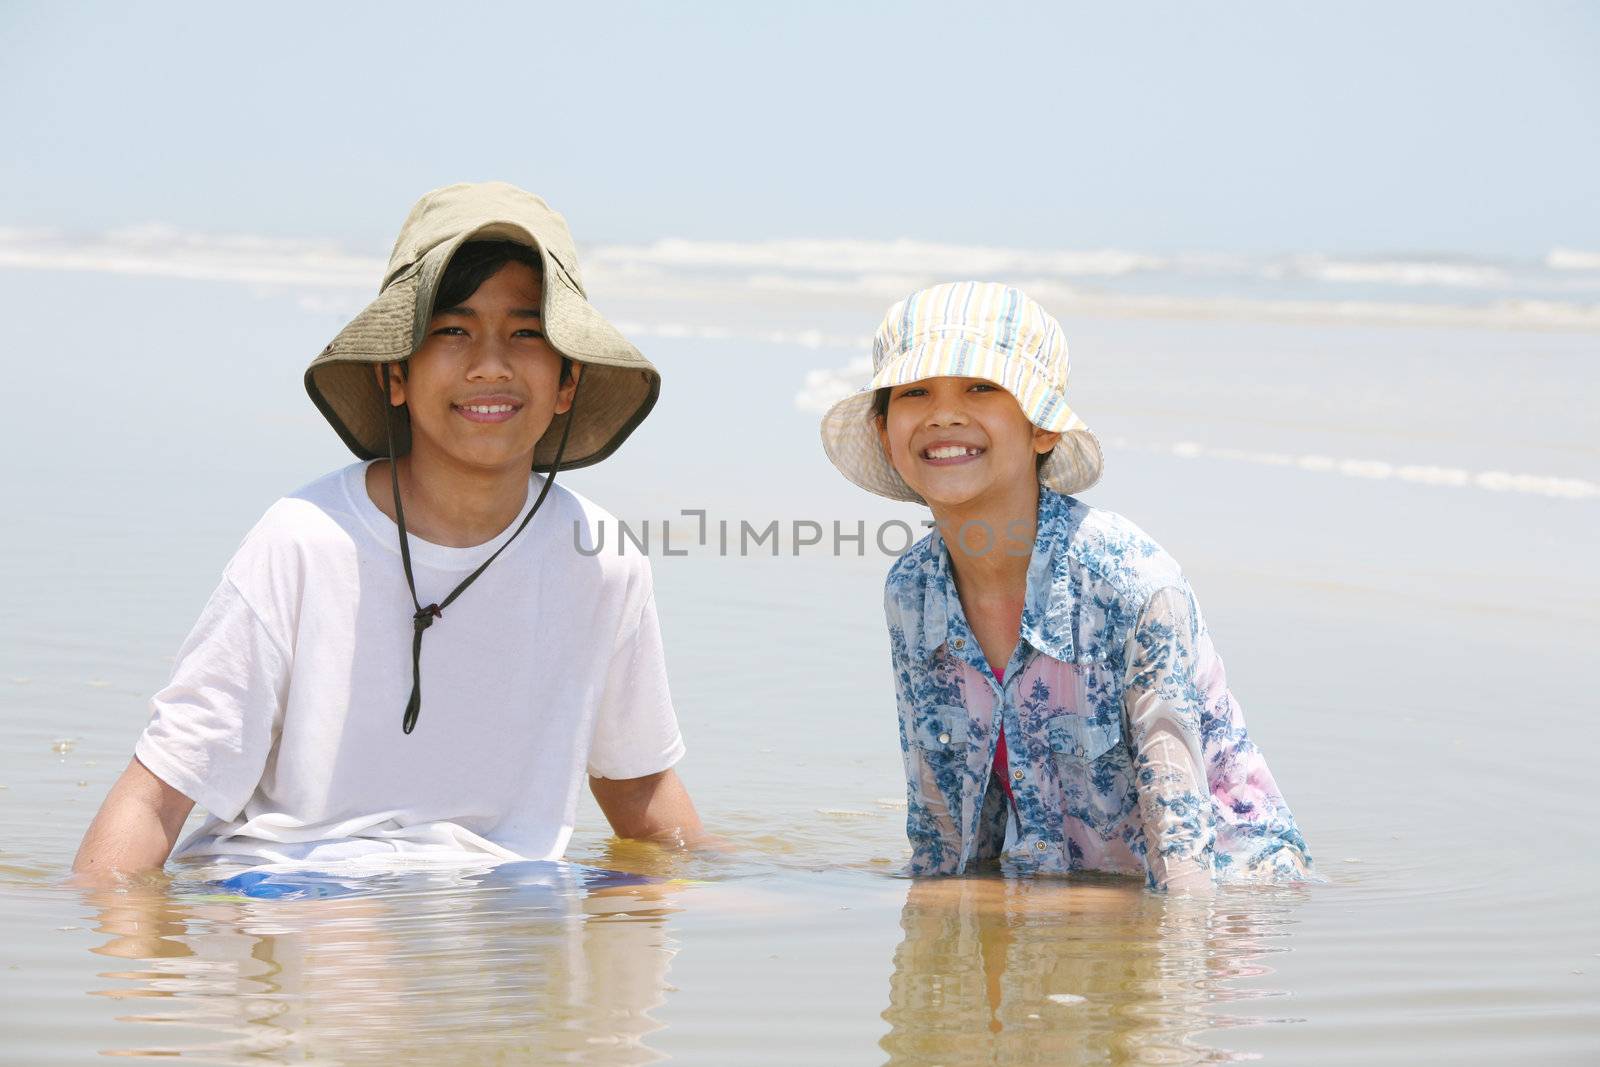 Two children sitting in water at ocean shore by jarenwicklund